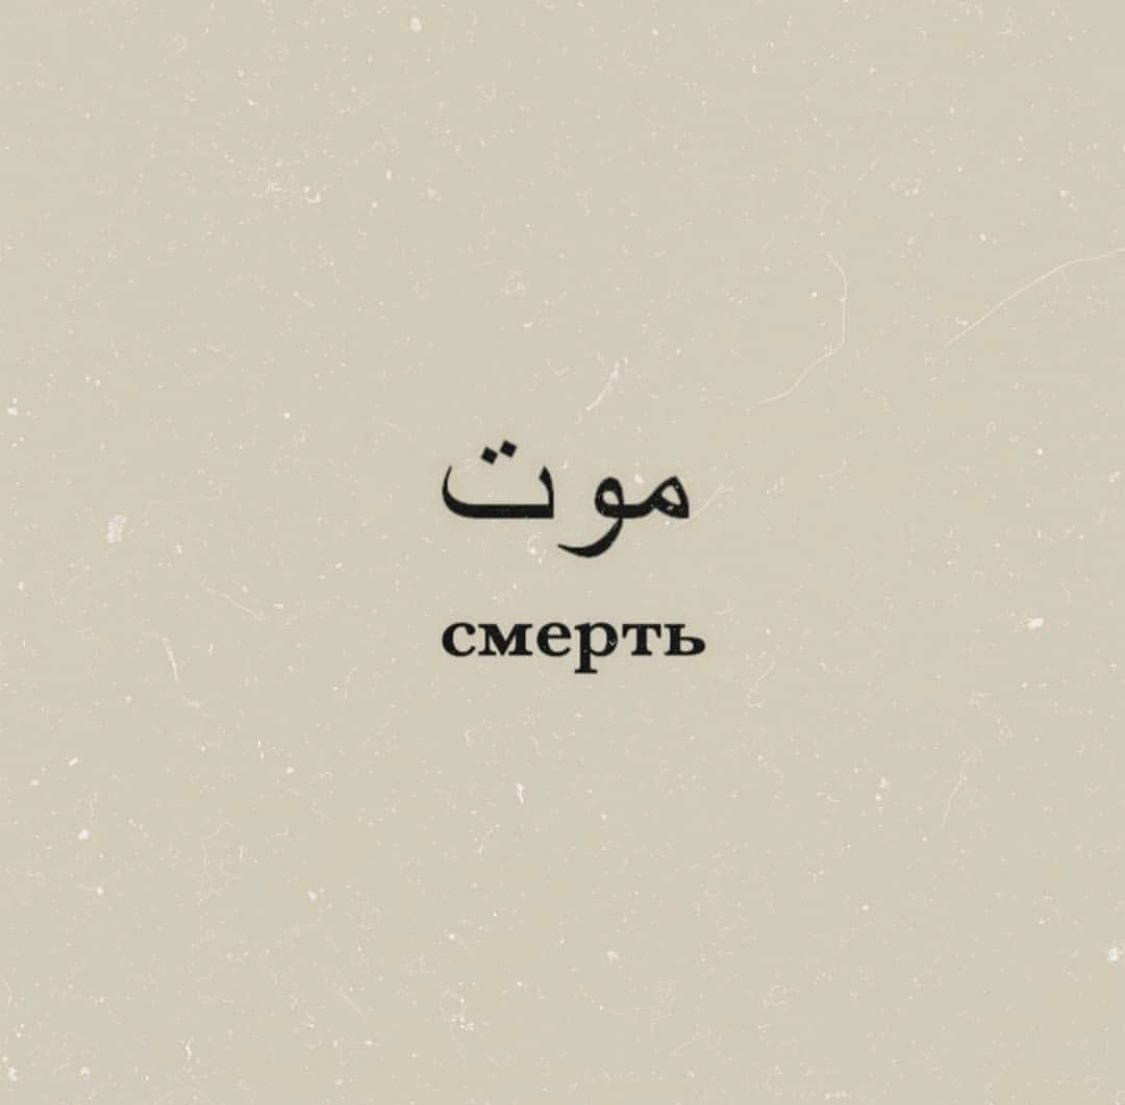 Полюби свою судьбу перевод на арабский. Надписи на арабском языке. Красивые слова на арабском. Красивые арабские Слав. Обои с арабскими надписями.